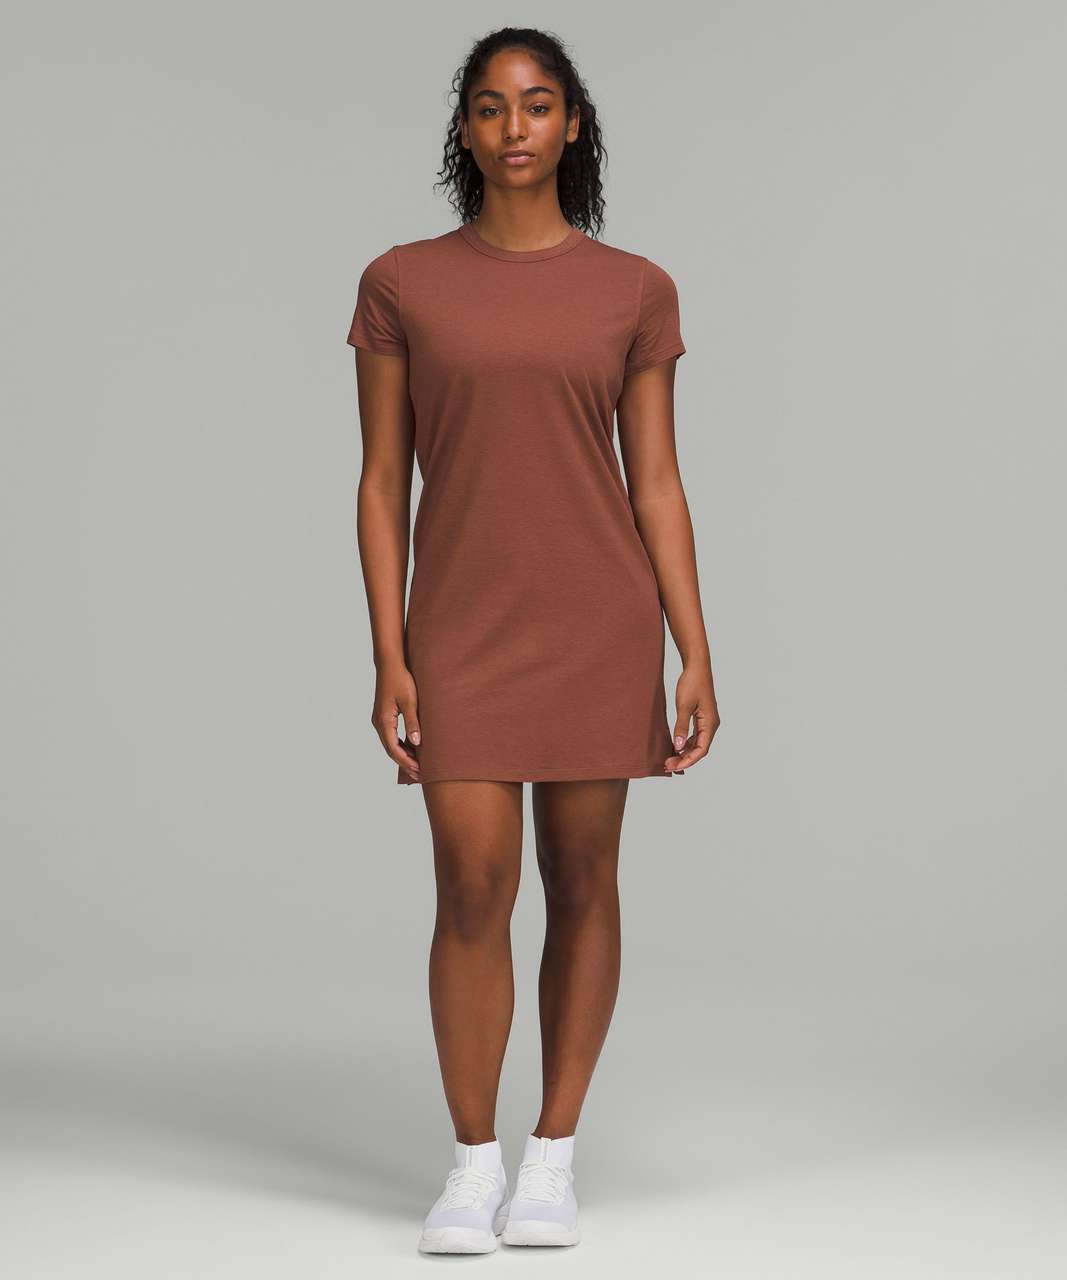 Lululemon Classic-Fit Cotton-Blend T-Shirt Dress - Ancient Copper